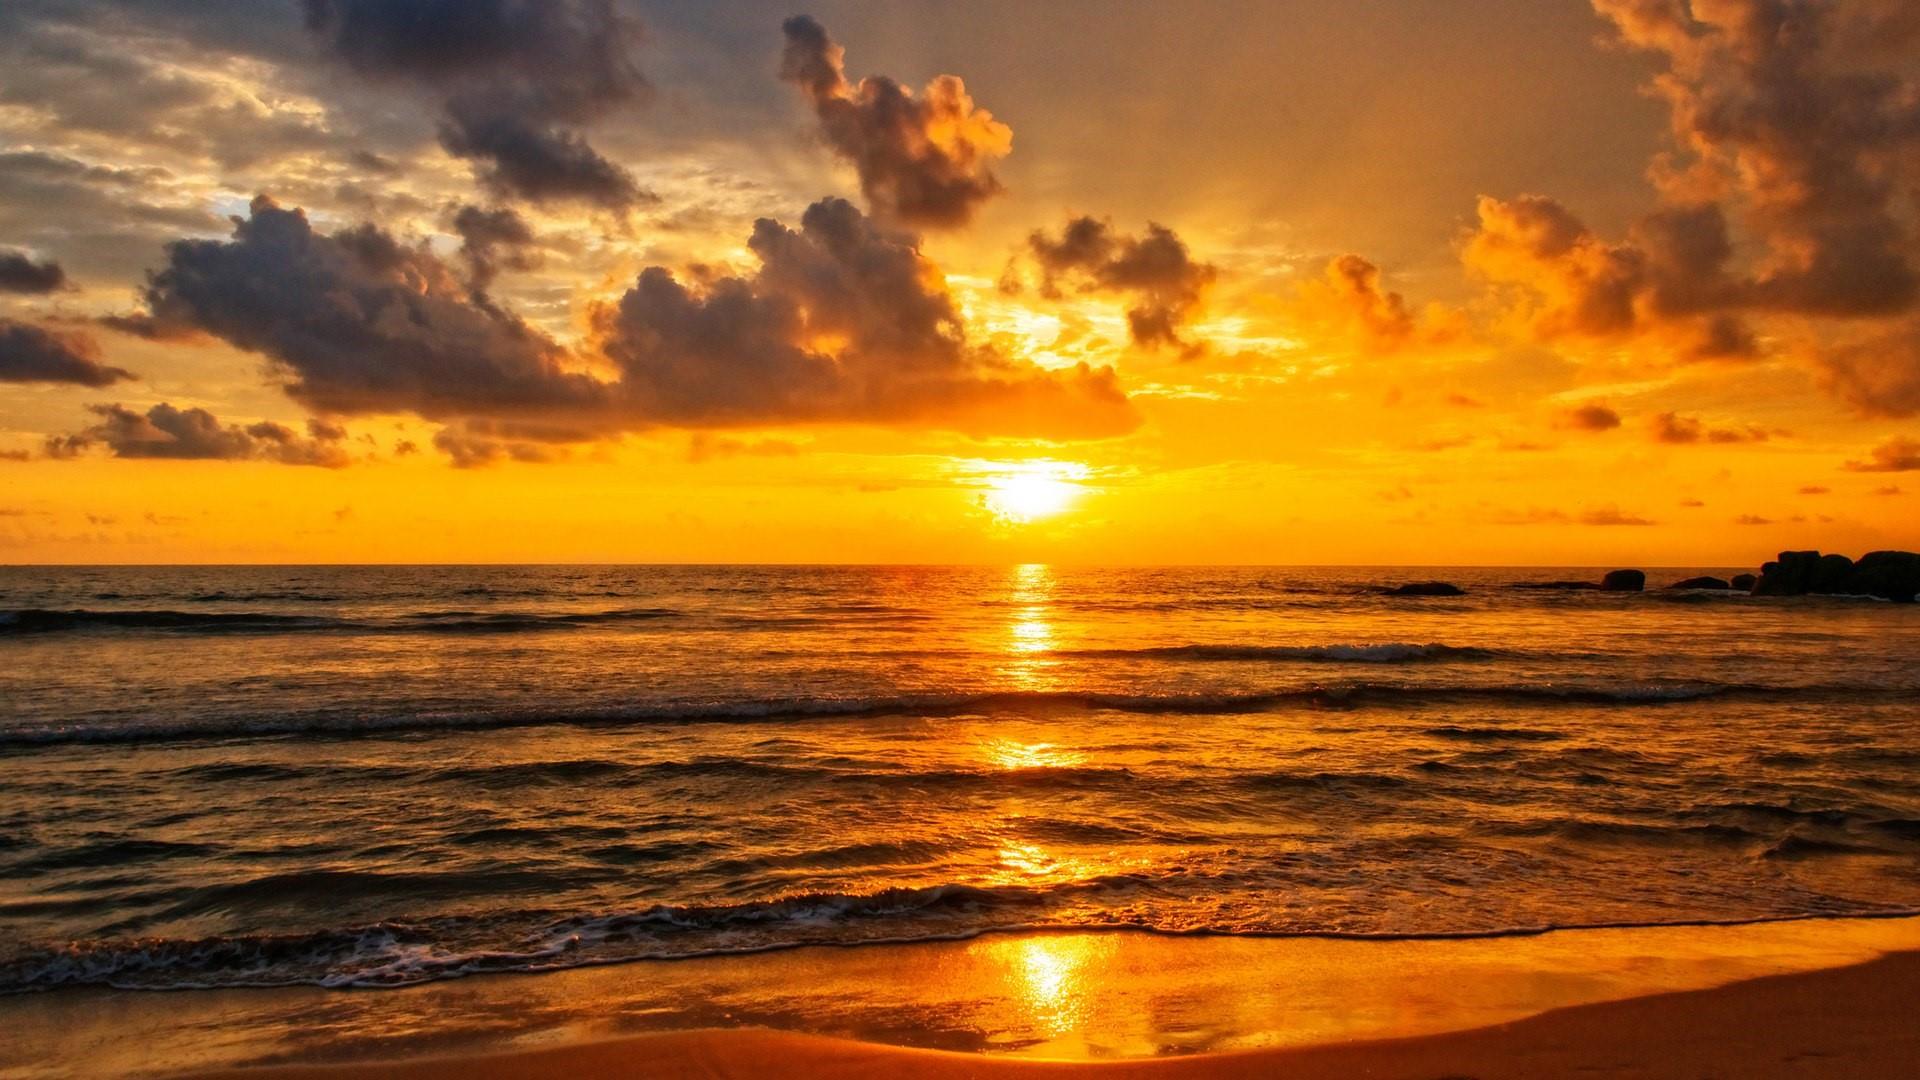 Golden sunset over the Indian Ocean in Sri Lanka wallpaper - backiee